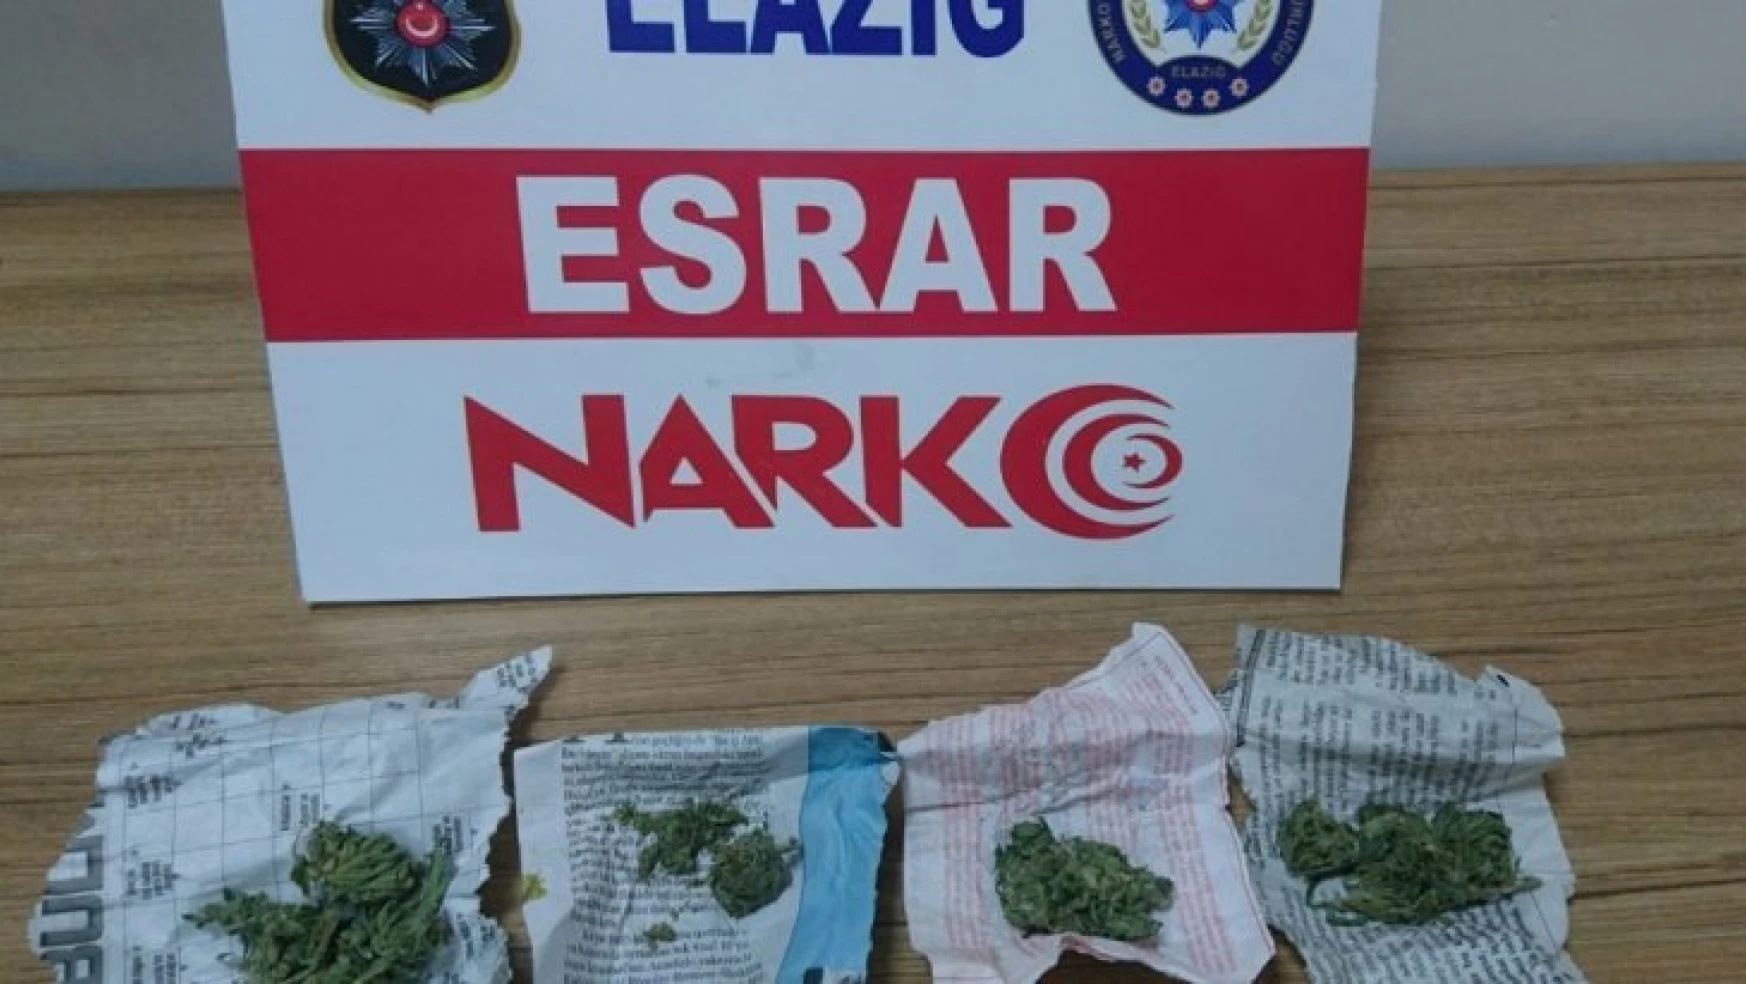 Elazığ'da uyuşturucu ile mücadele: 3 tutuklama